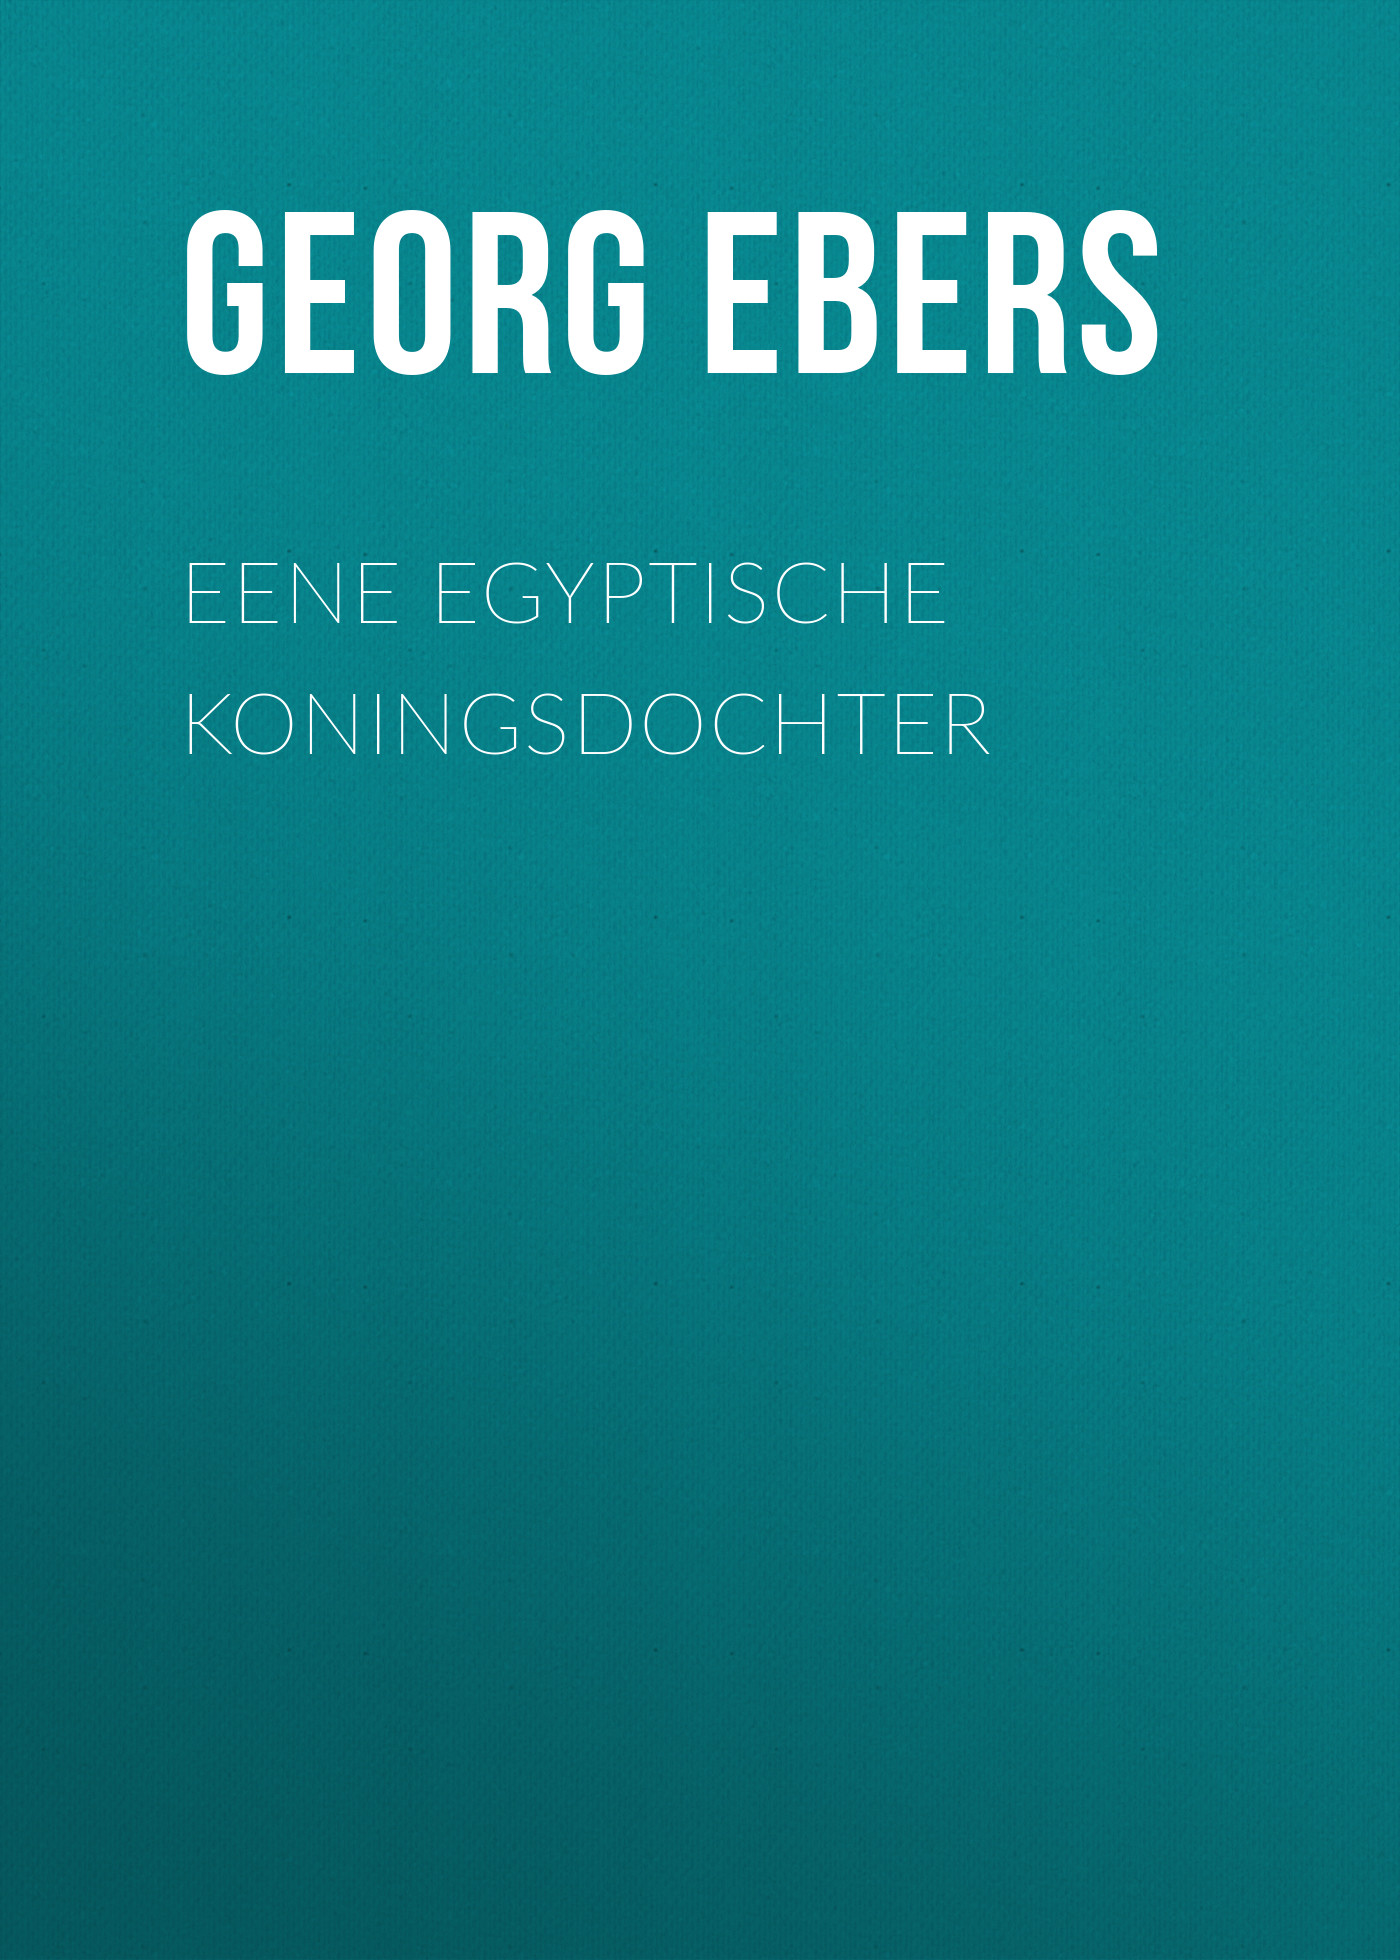 Книга Eene Egyptische Koningsdochter из серии , созданная Georg Ebers, может относится к жанру Зарубежная старинная литература, Зарубежная классика. Стоимость электронной книги Eene Egyptische Koningsdochter с идентификатором 24621133 составляет 0 руб.